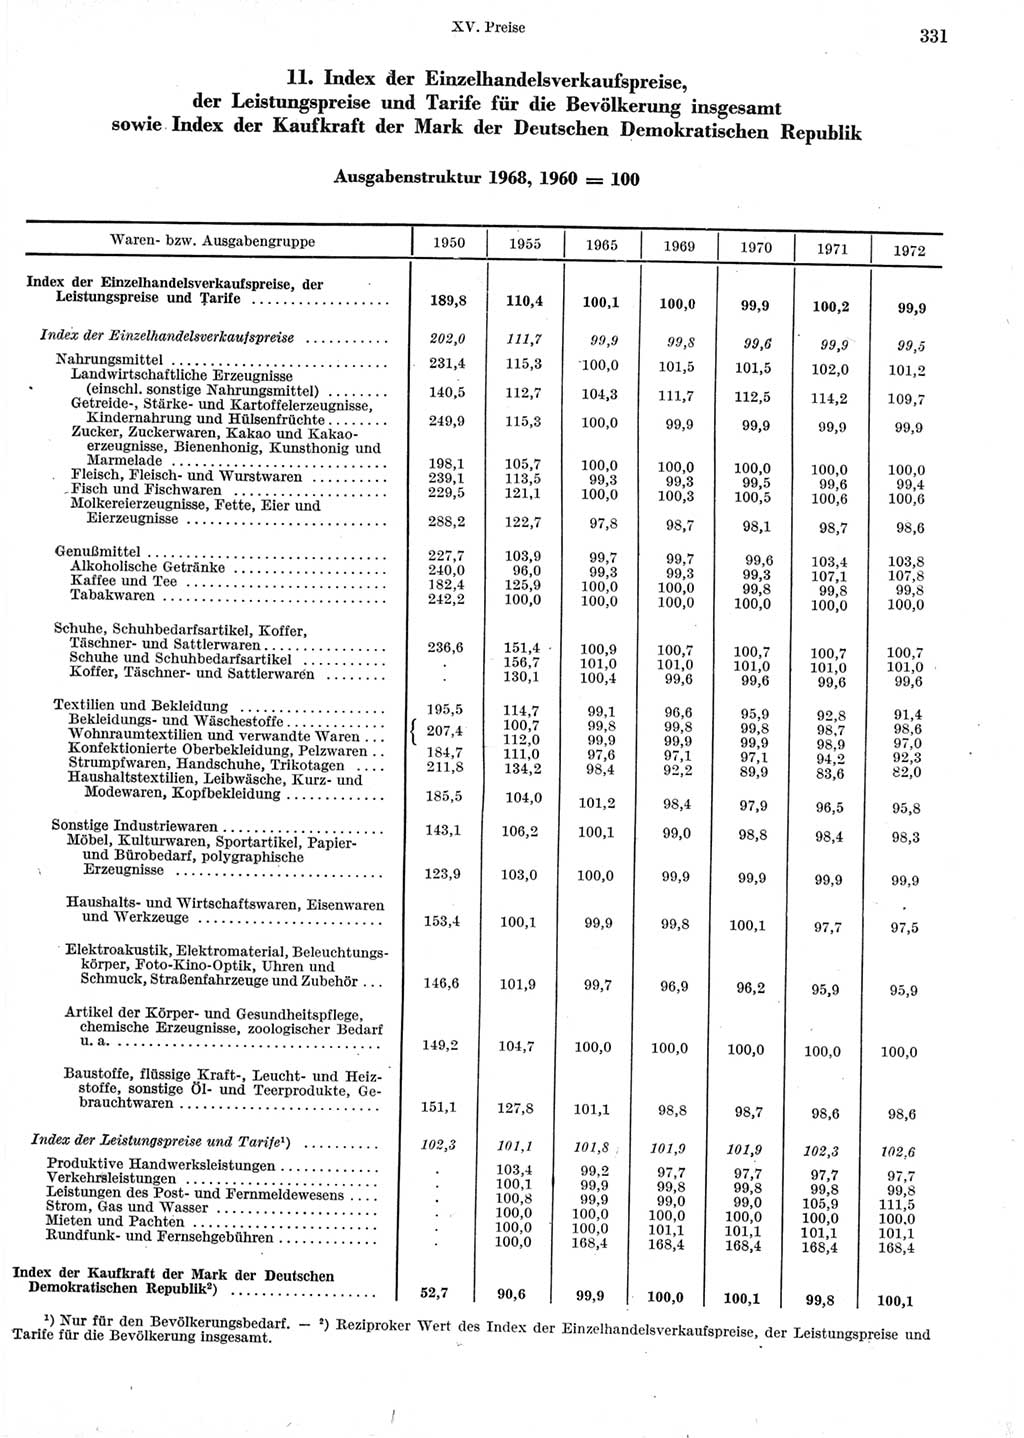 Statistisches Jahrbuch der Deutschen Demokratischen Republik (DDR) 1973, Seite 331 (Stat. Jb. DDR 1973, S. 331)